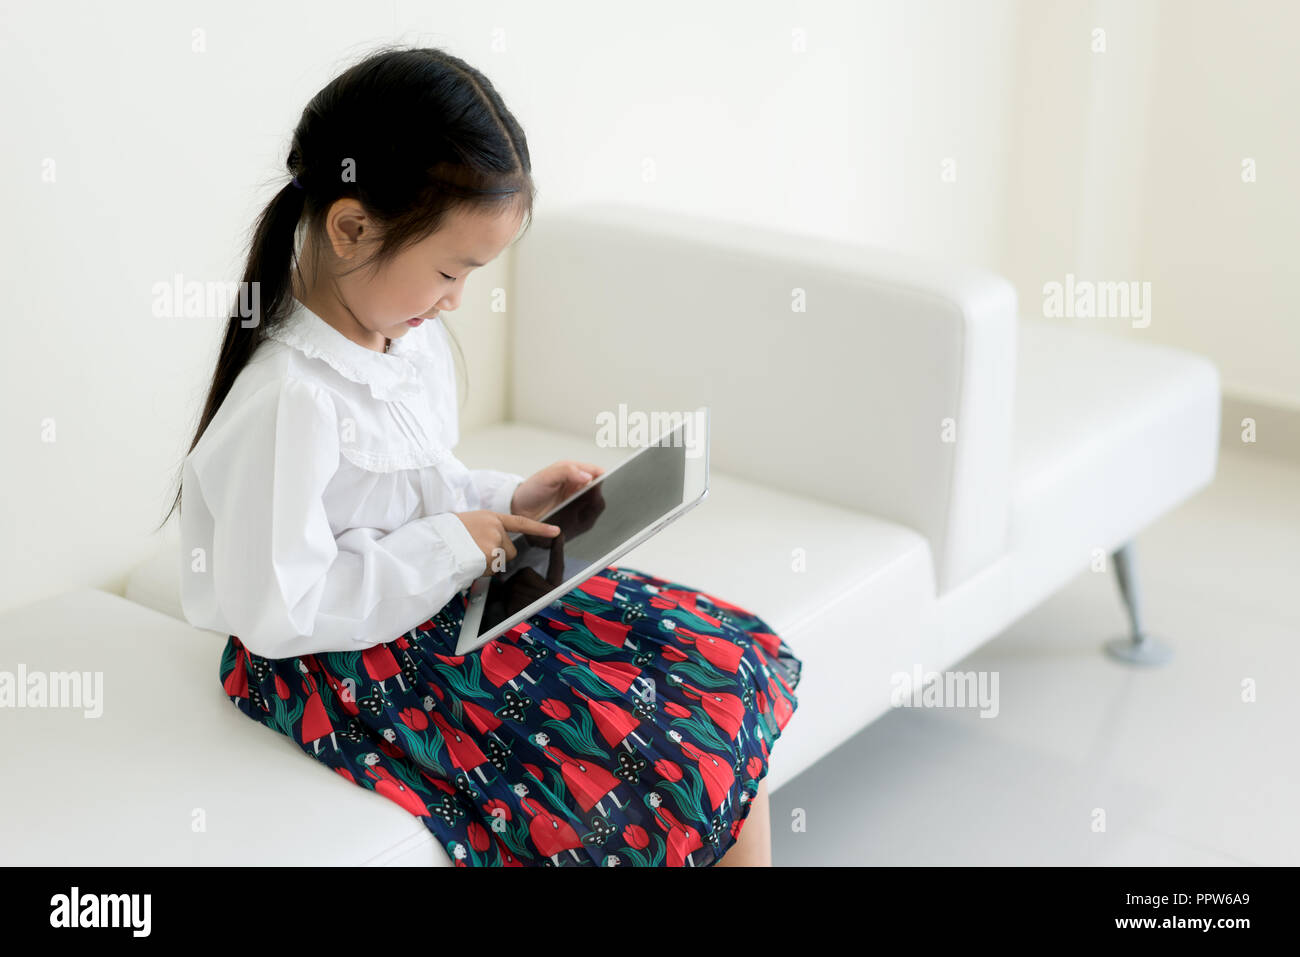 Petite fille asiatique jouant digital tablet. L'éducation, de la science, de la technologie, les enfants et personnes concept. Banque D'Images